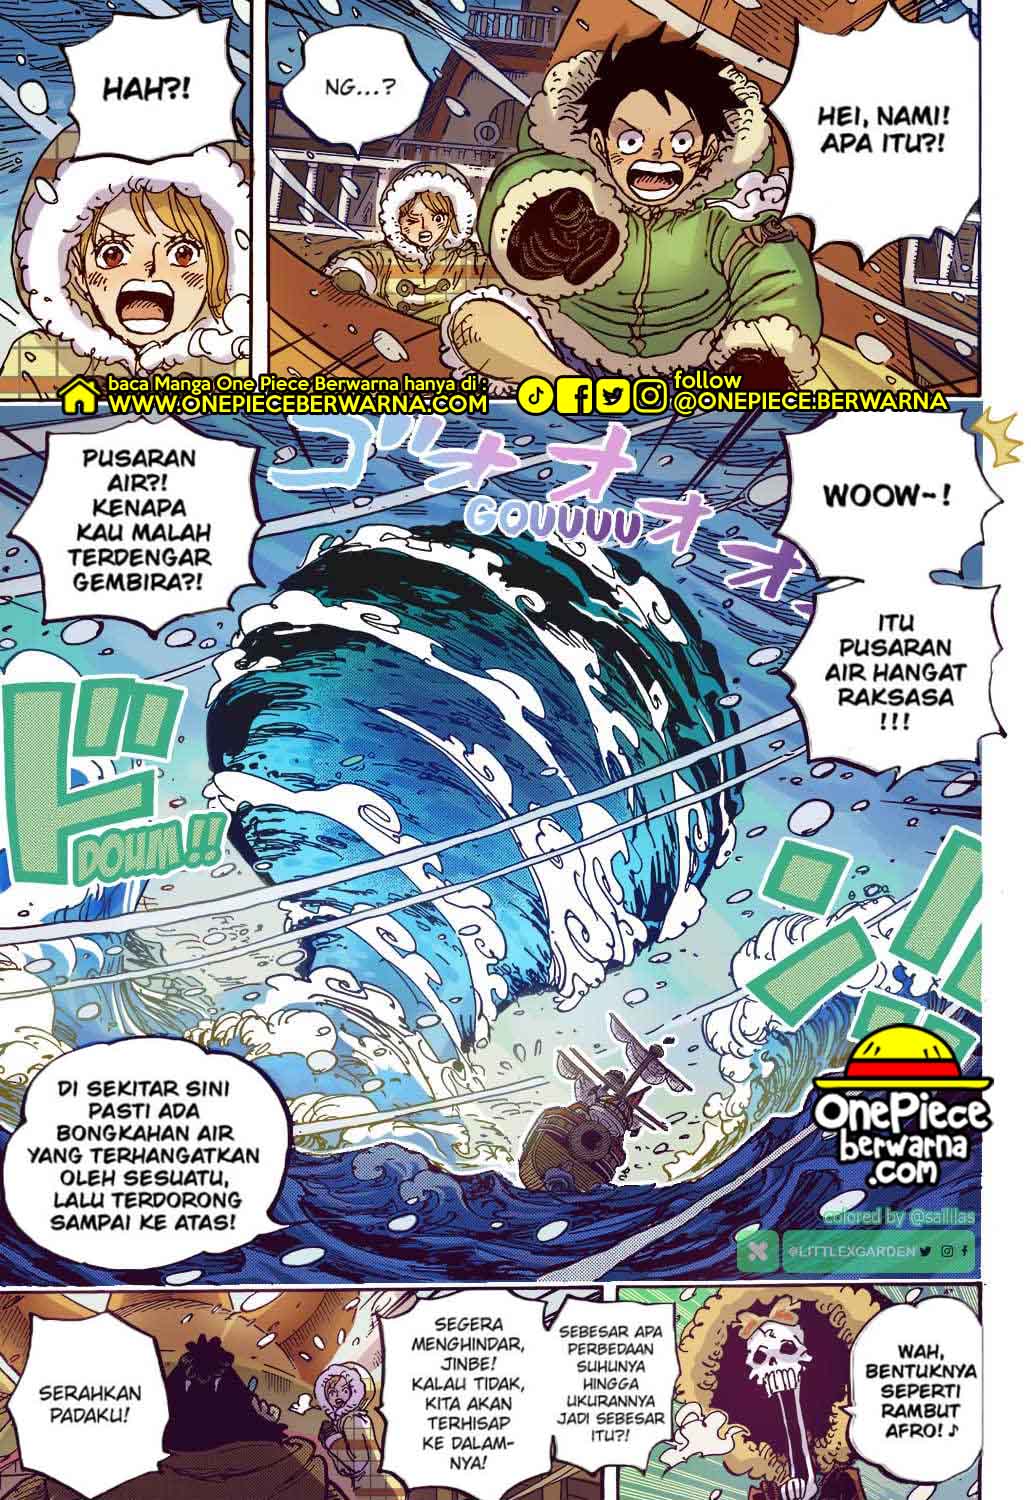 Baca manga komik One Piece Berwarna Bahasa Indonesia HD Chapter 1060